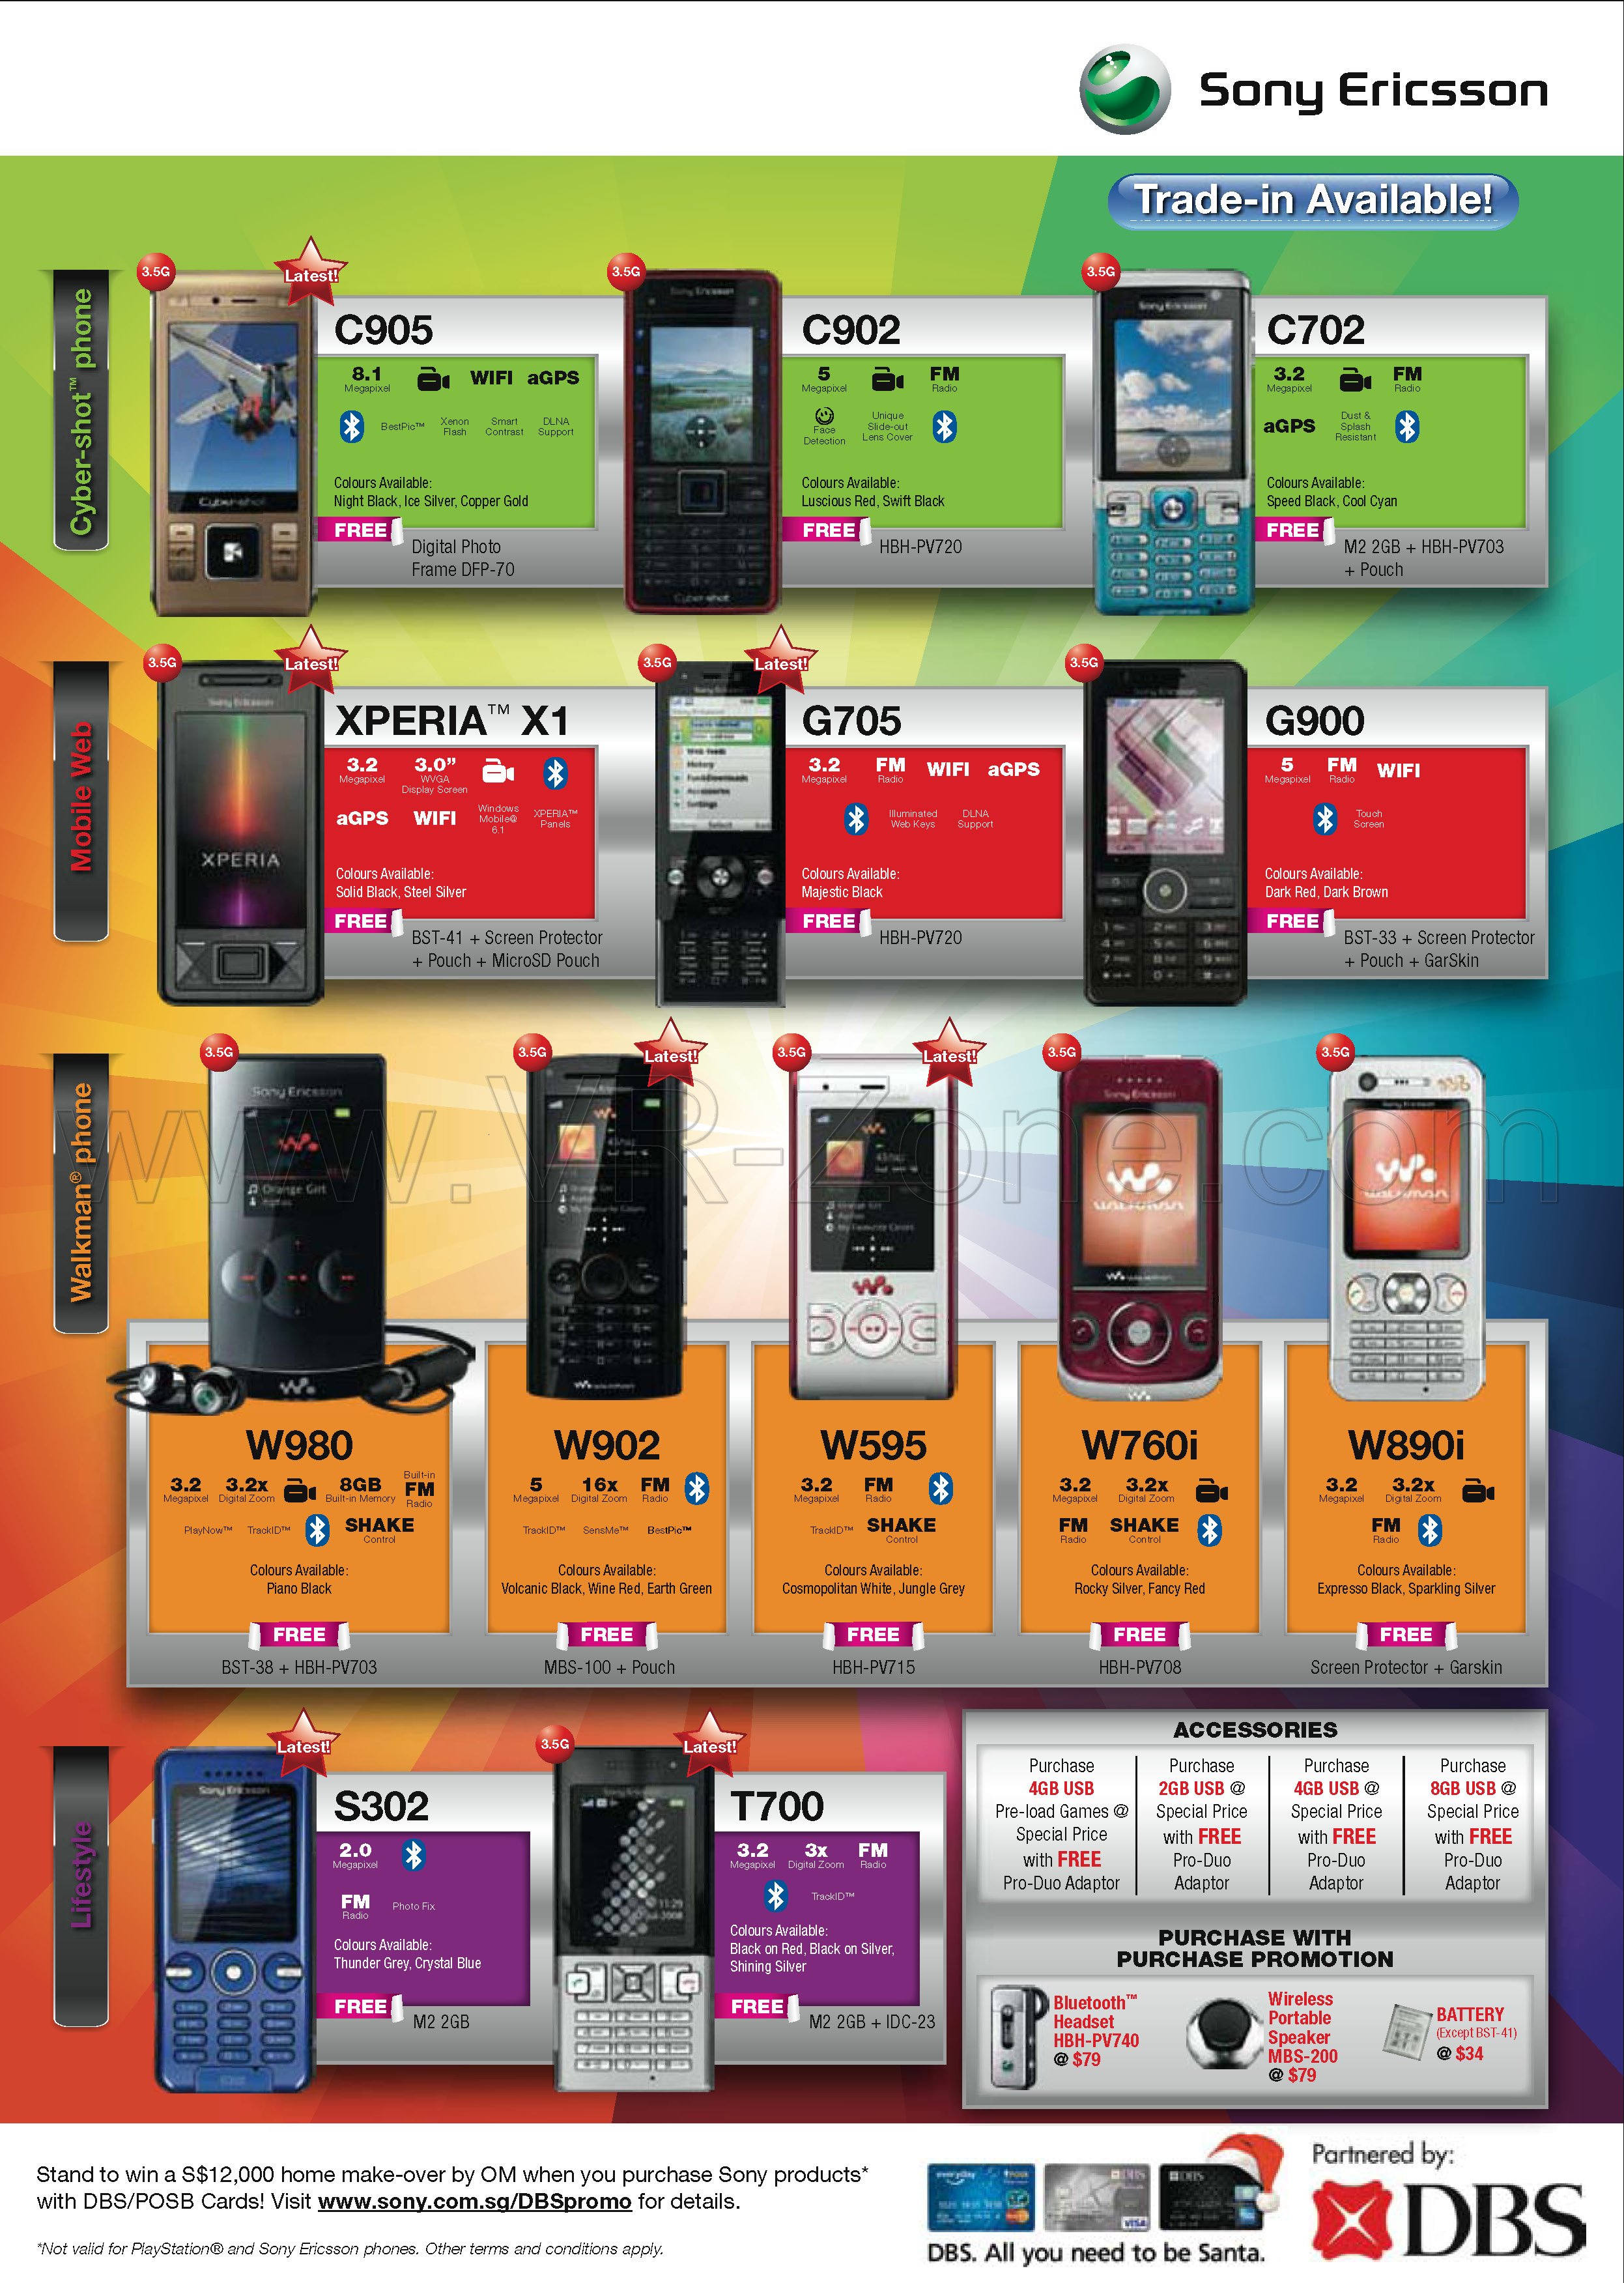 Sitex 2008 price list image brochure of Sony Ericsson